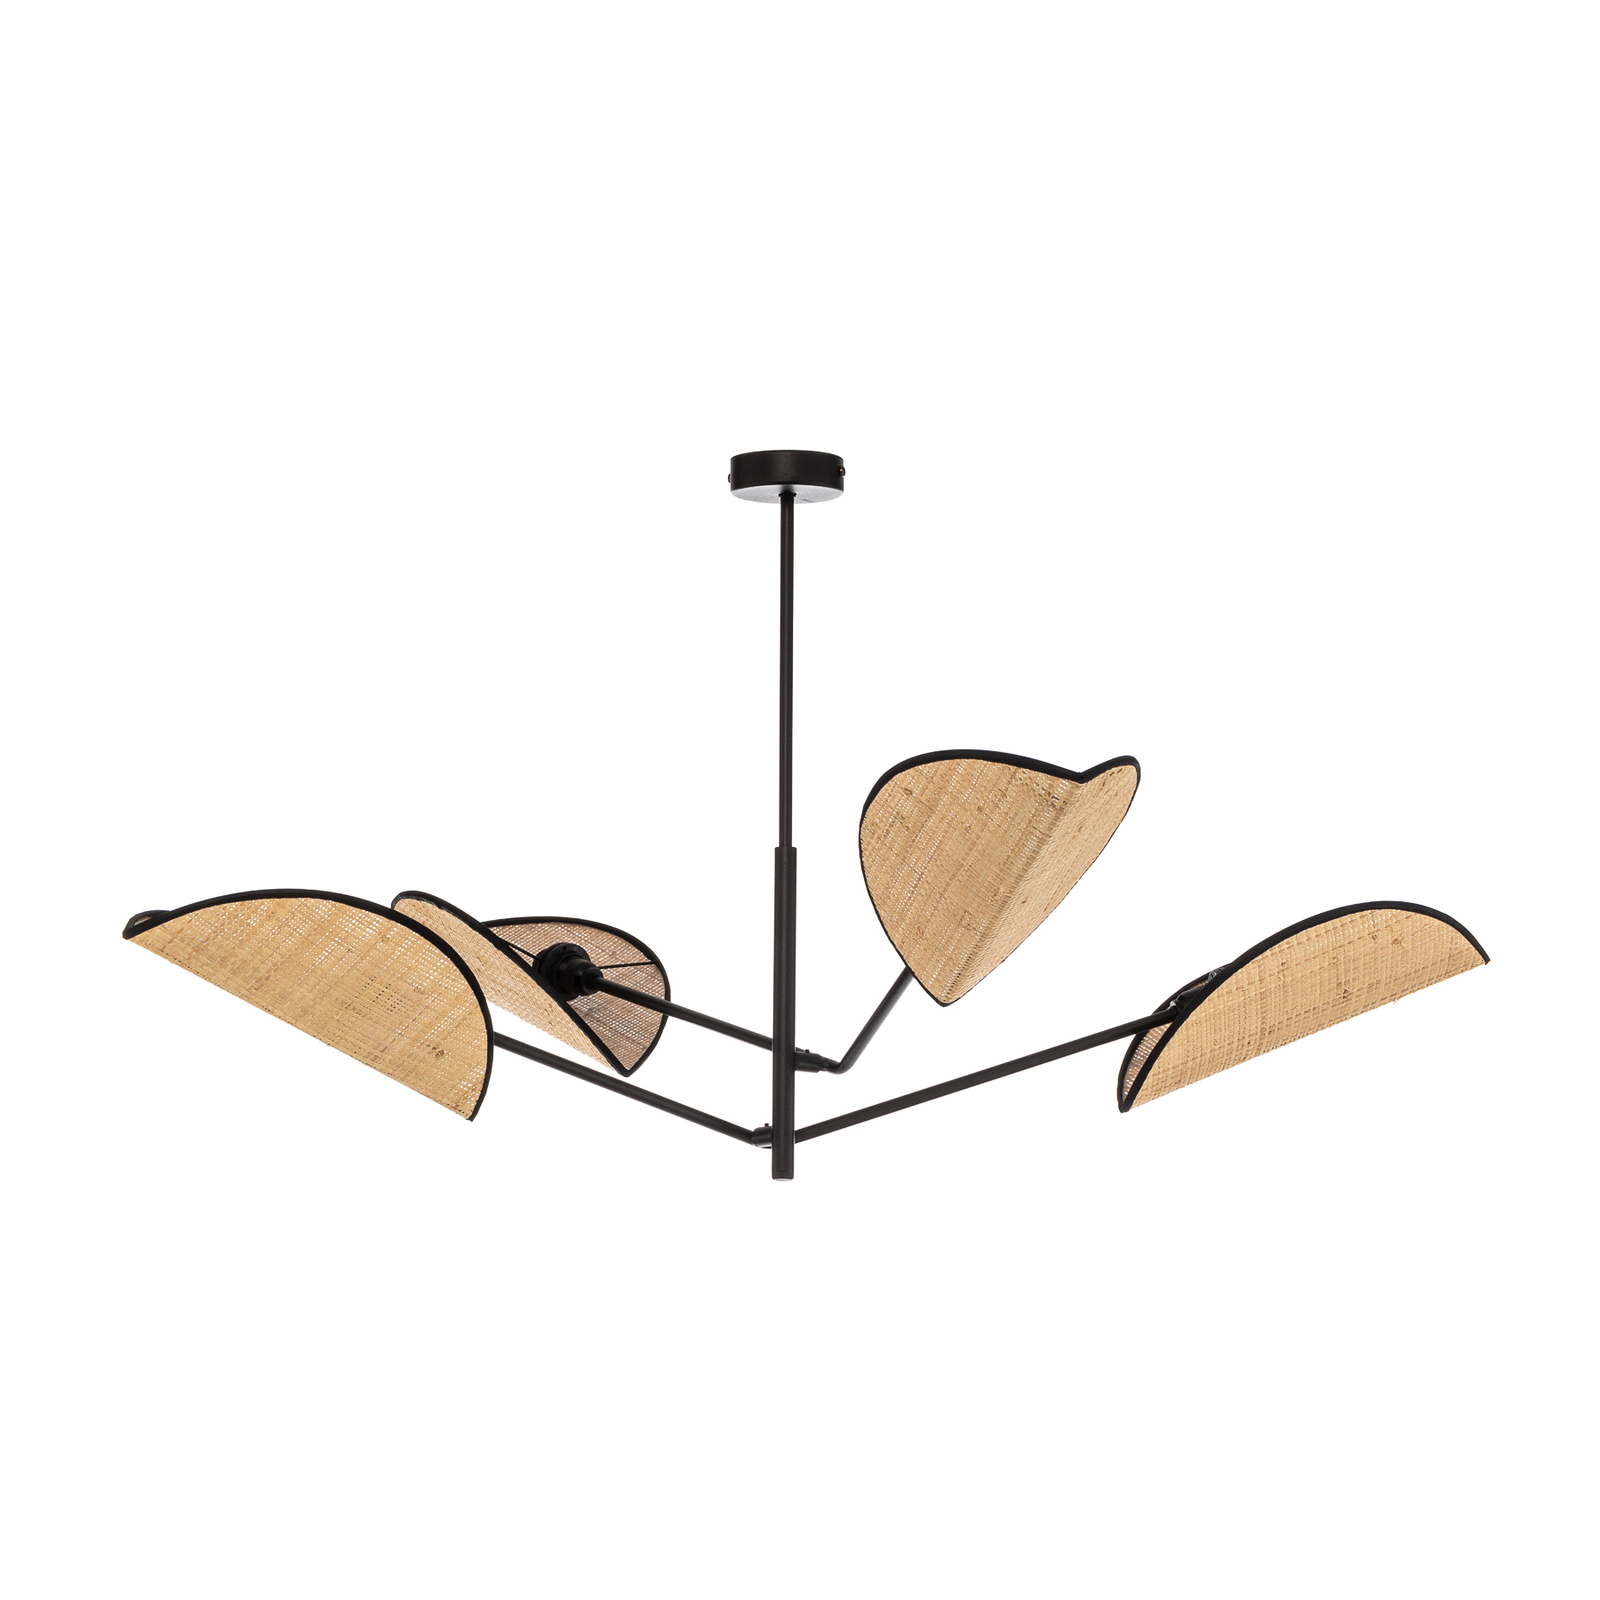 Hanglamp Vene, zwart/rotanoptiek, 4-lamps